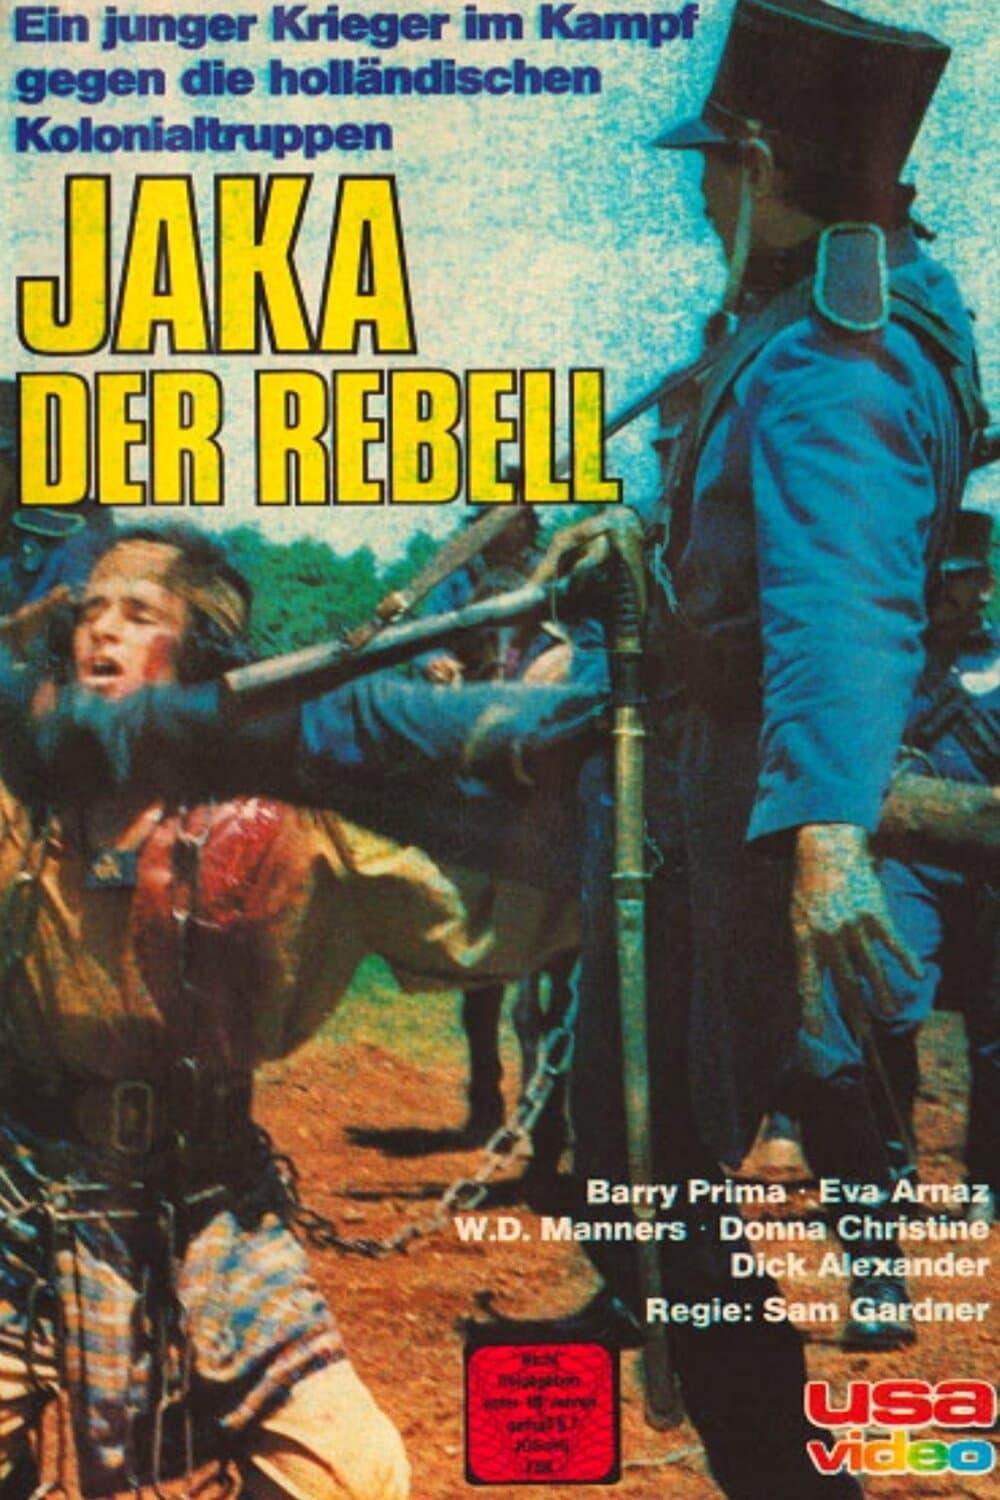 Jaka - Der Rebell poster